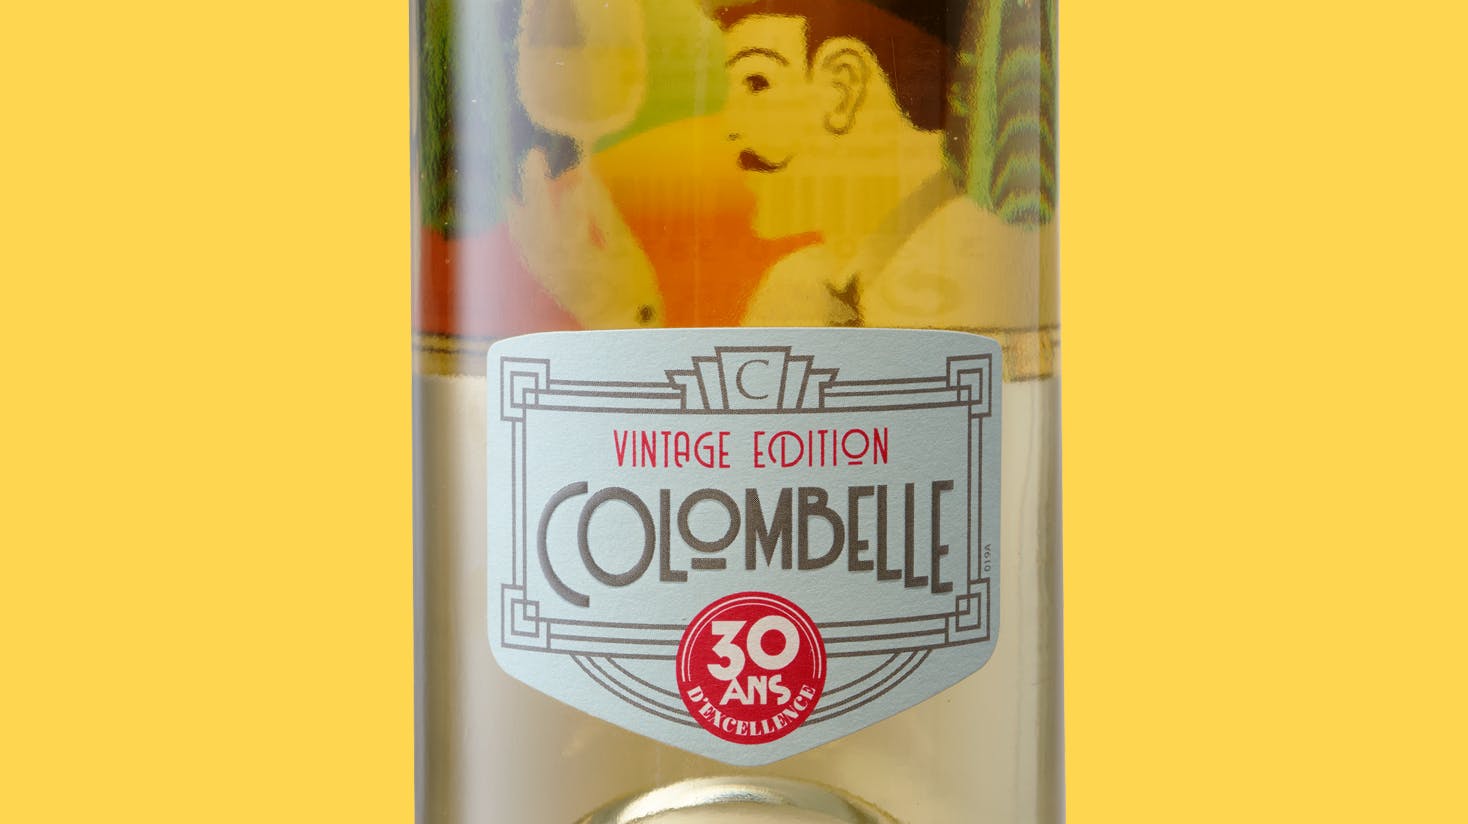 Image of Colombelle: un cuvée mítico reinventado 30 años después